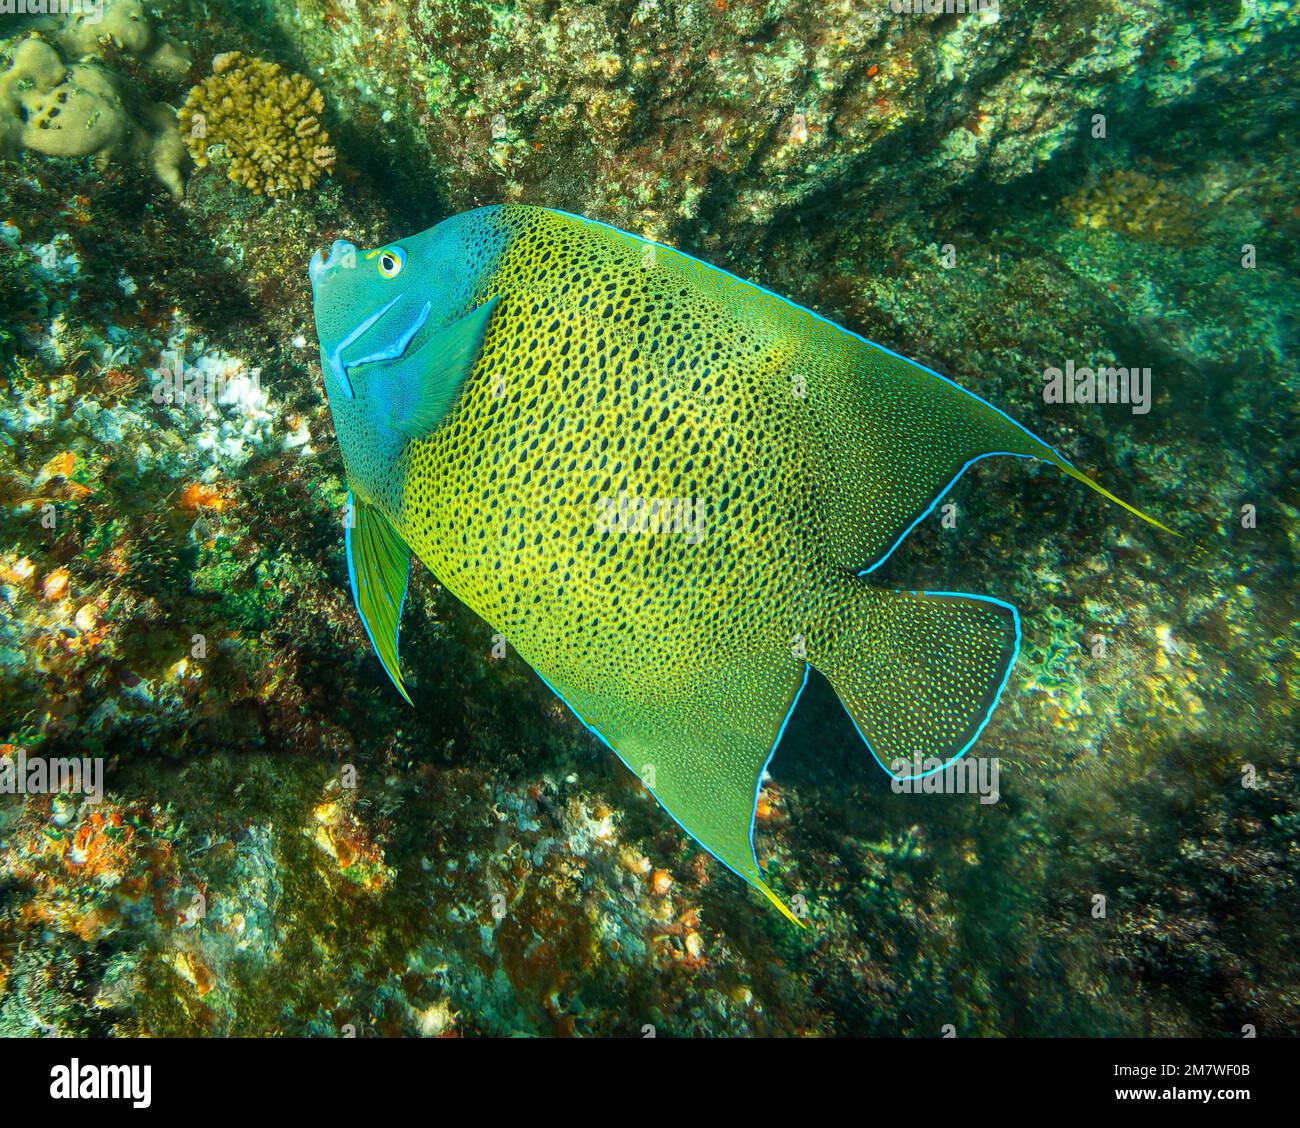 Vue rapprochée d'un poisson semi-angelcle (Pomacanthus semicirculatus) près de l'île St Pierre - Seychelles Banque D'Images